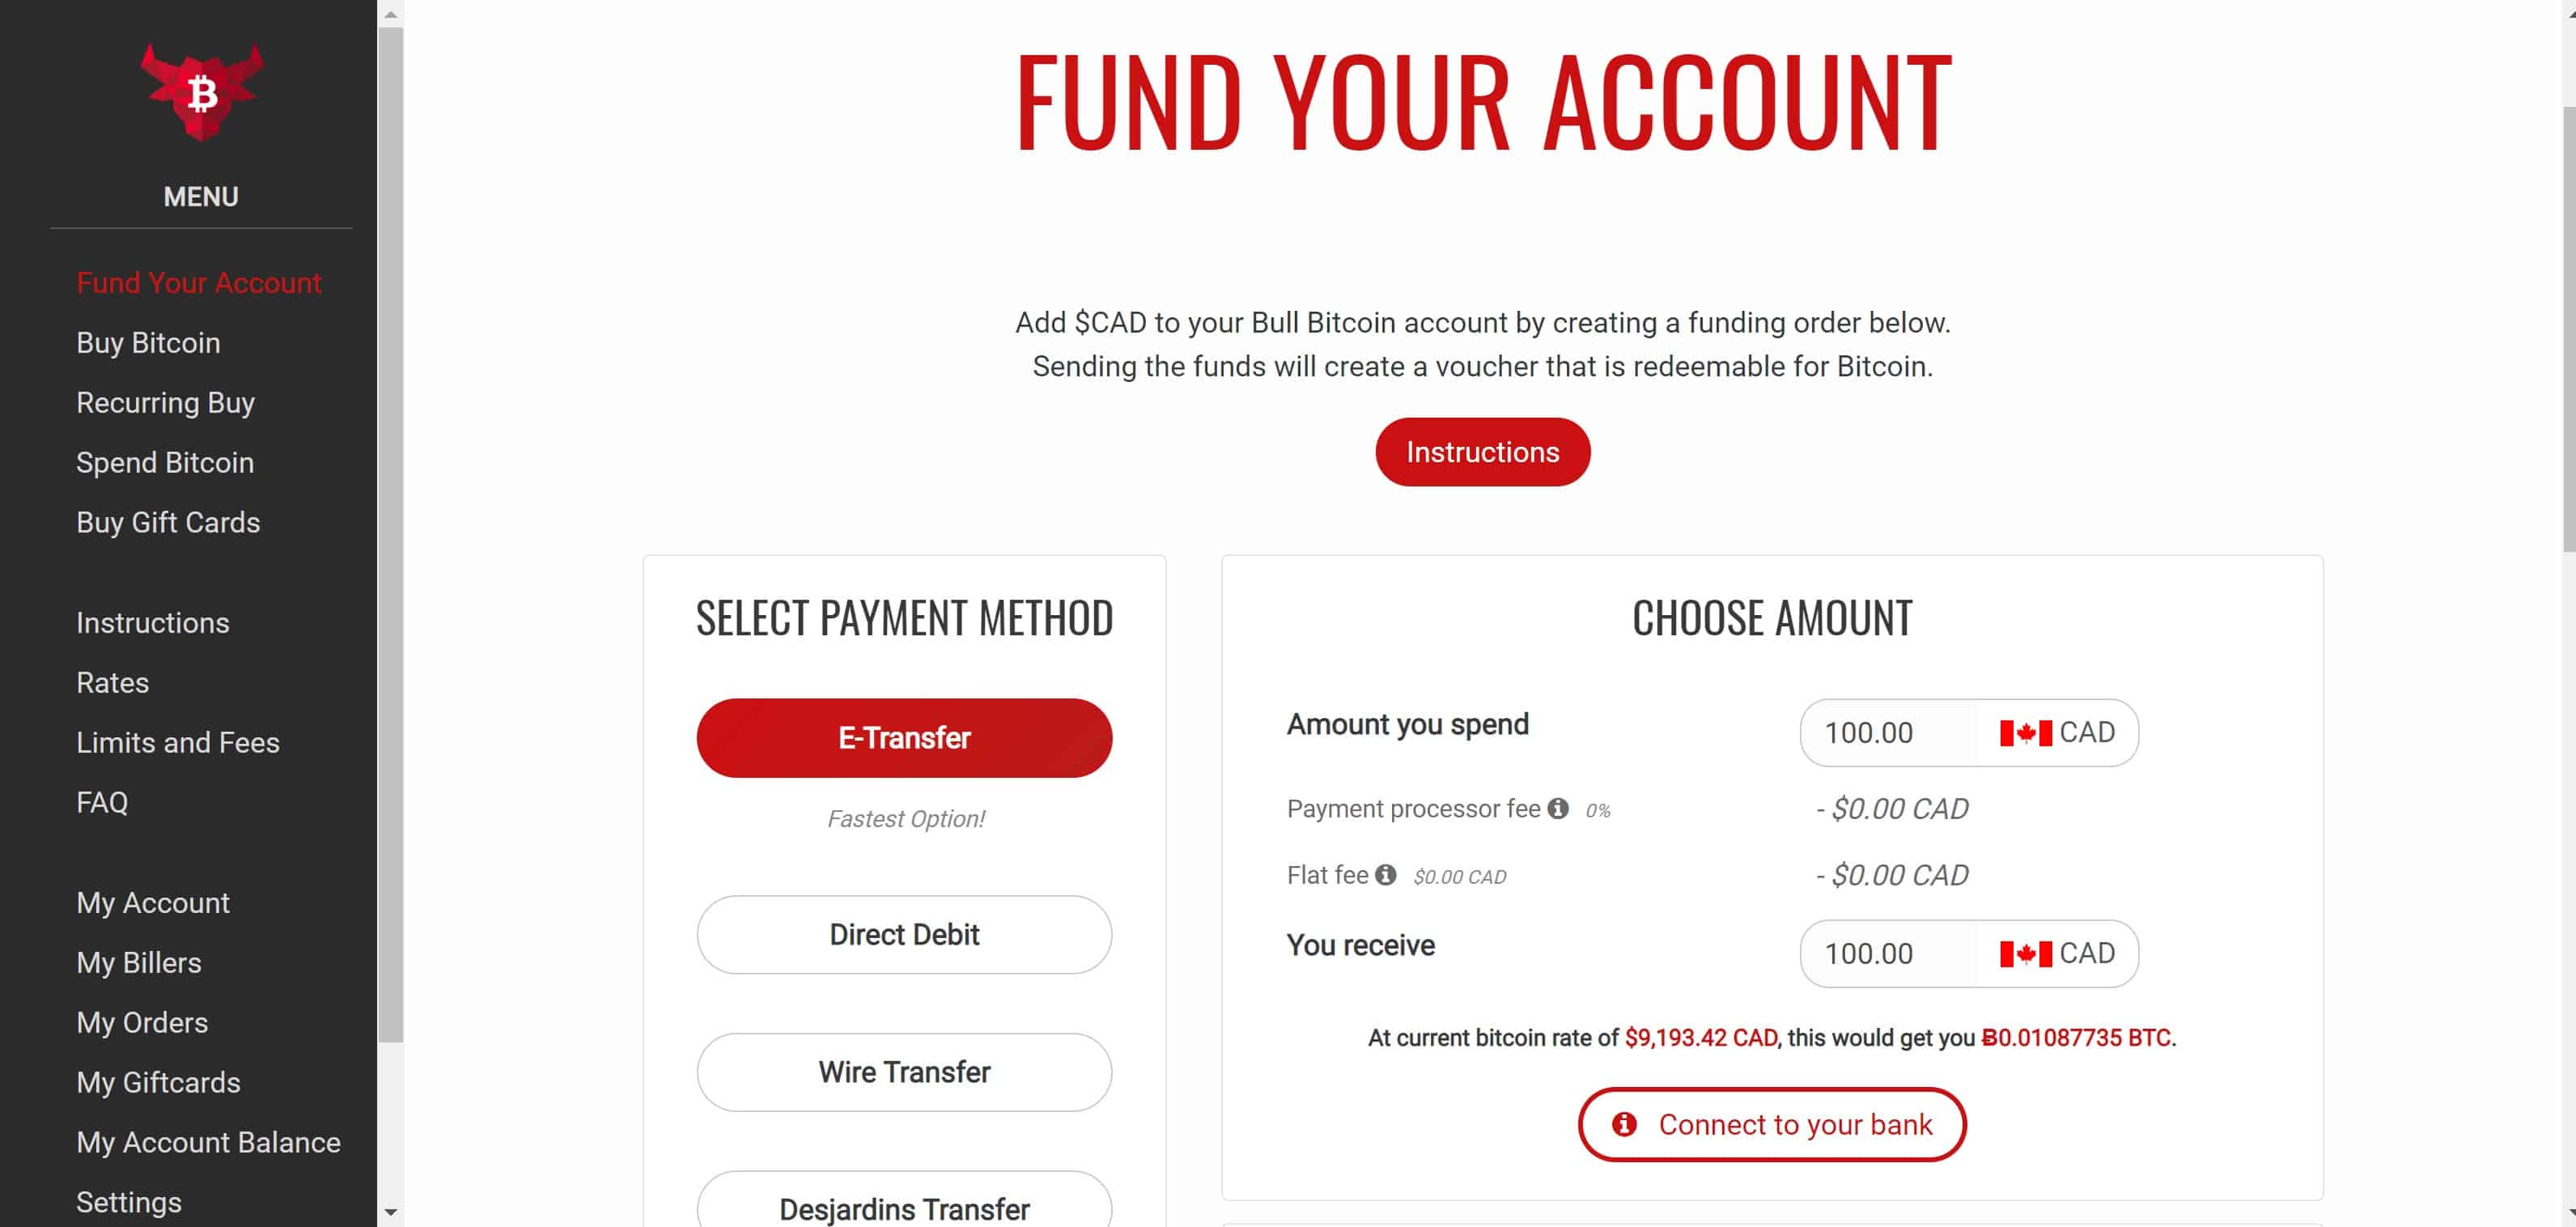 Fund your account on BullBitcoin.com